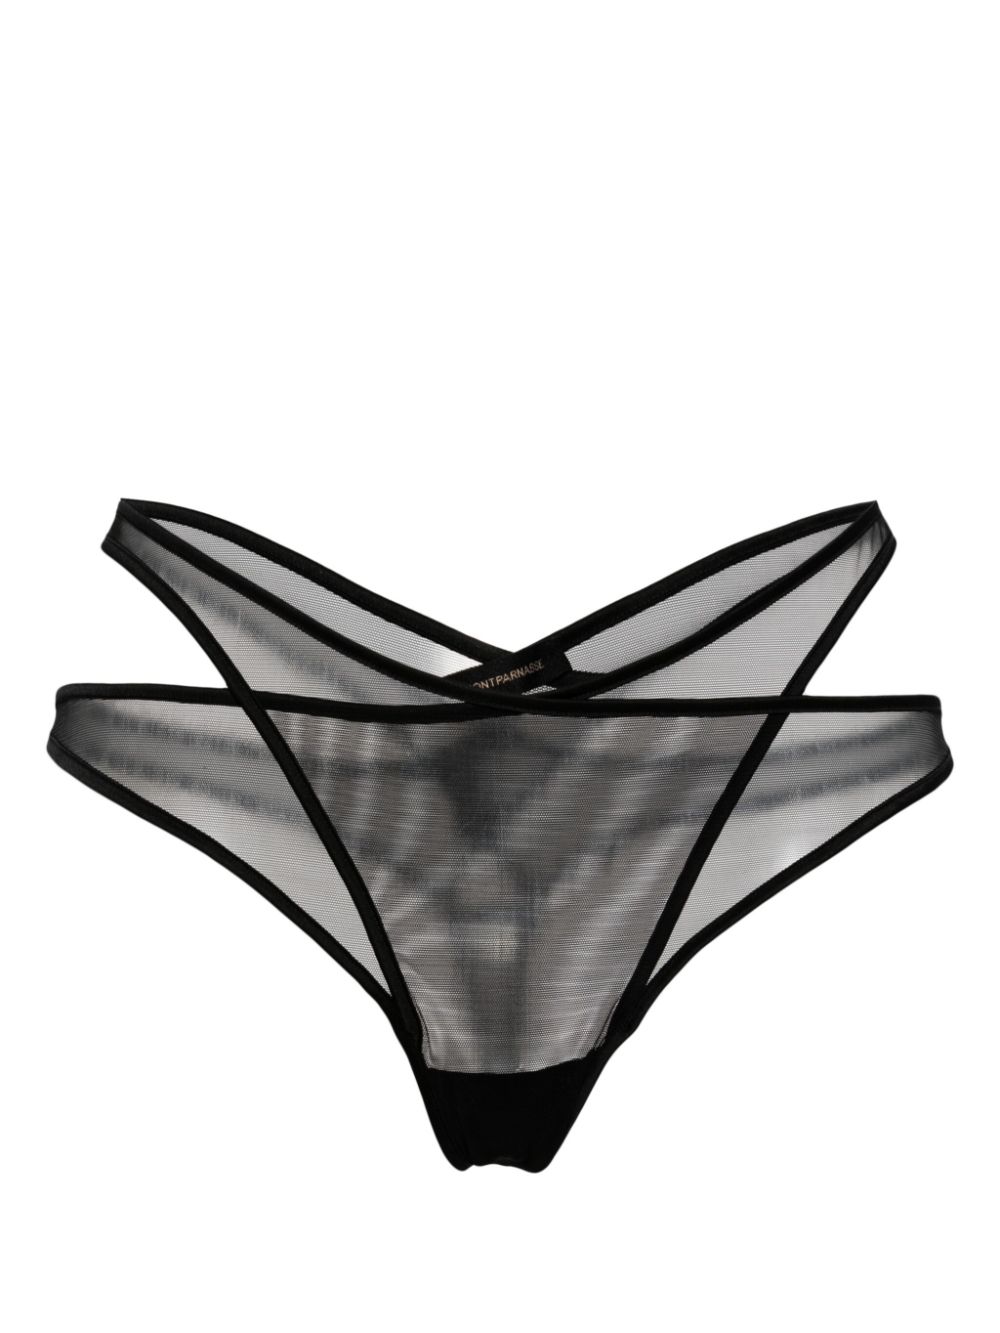 Kiki De Montparnasse Maxim Layered Sheer Thong In Black